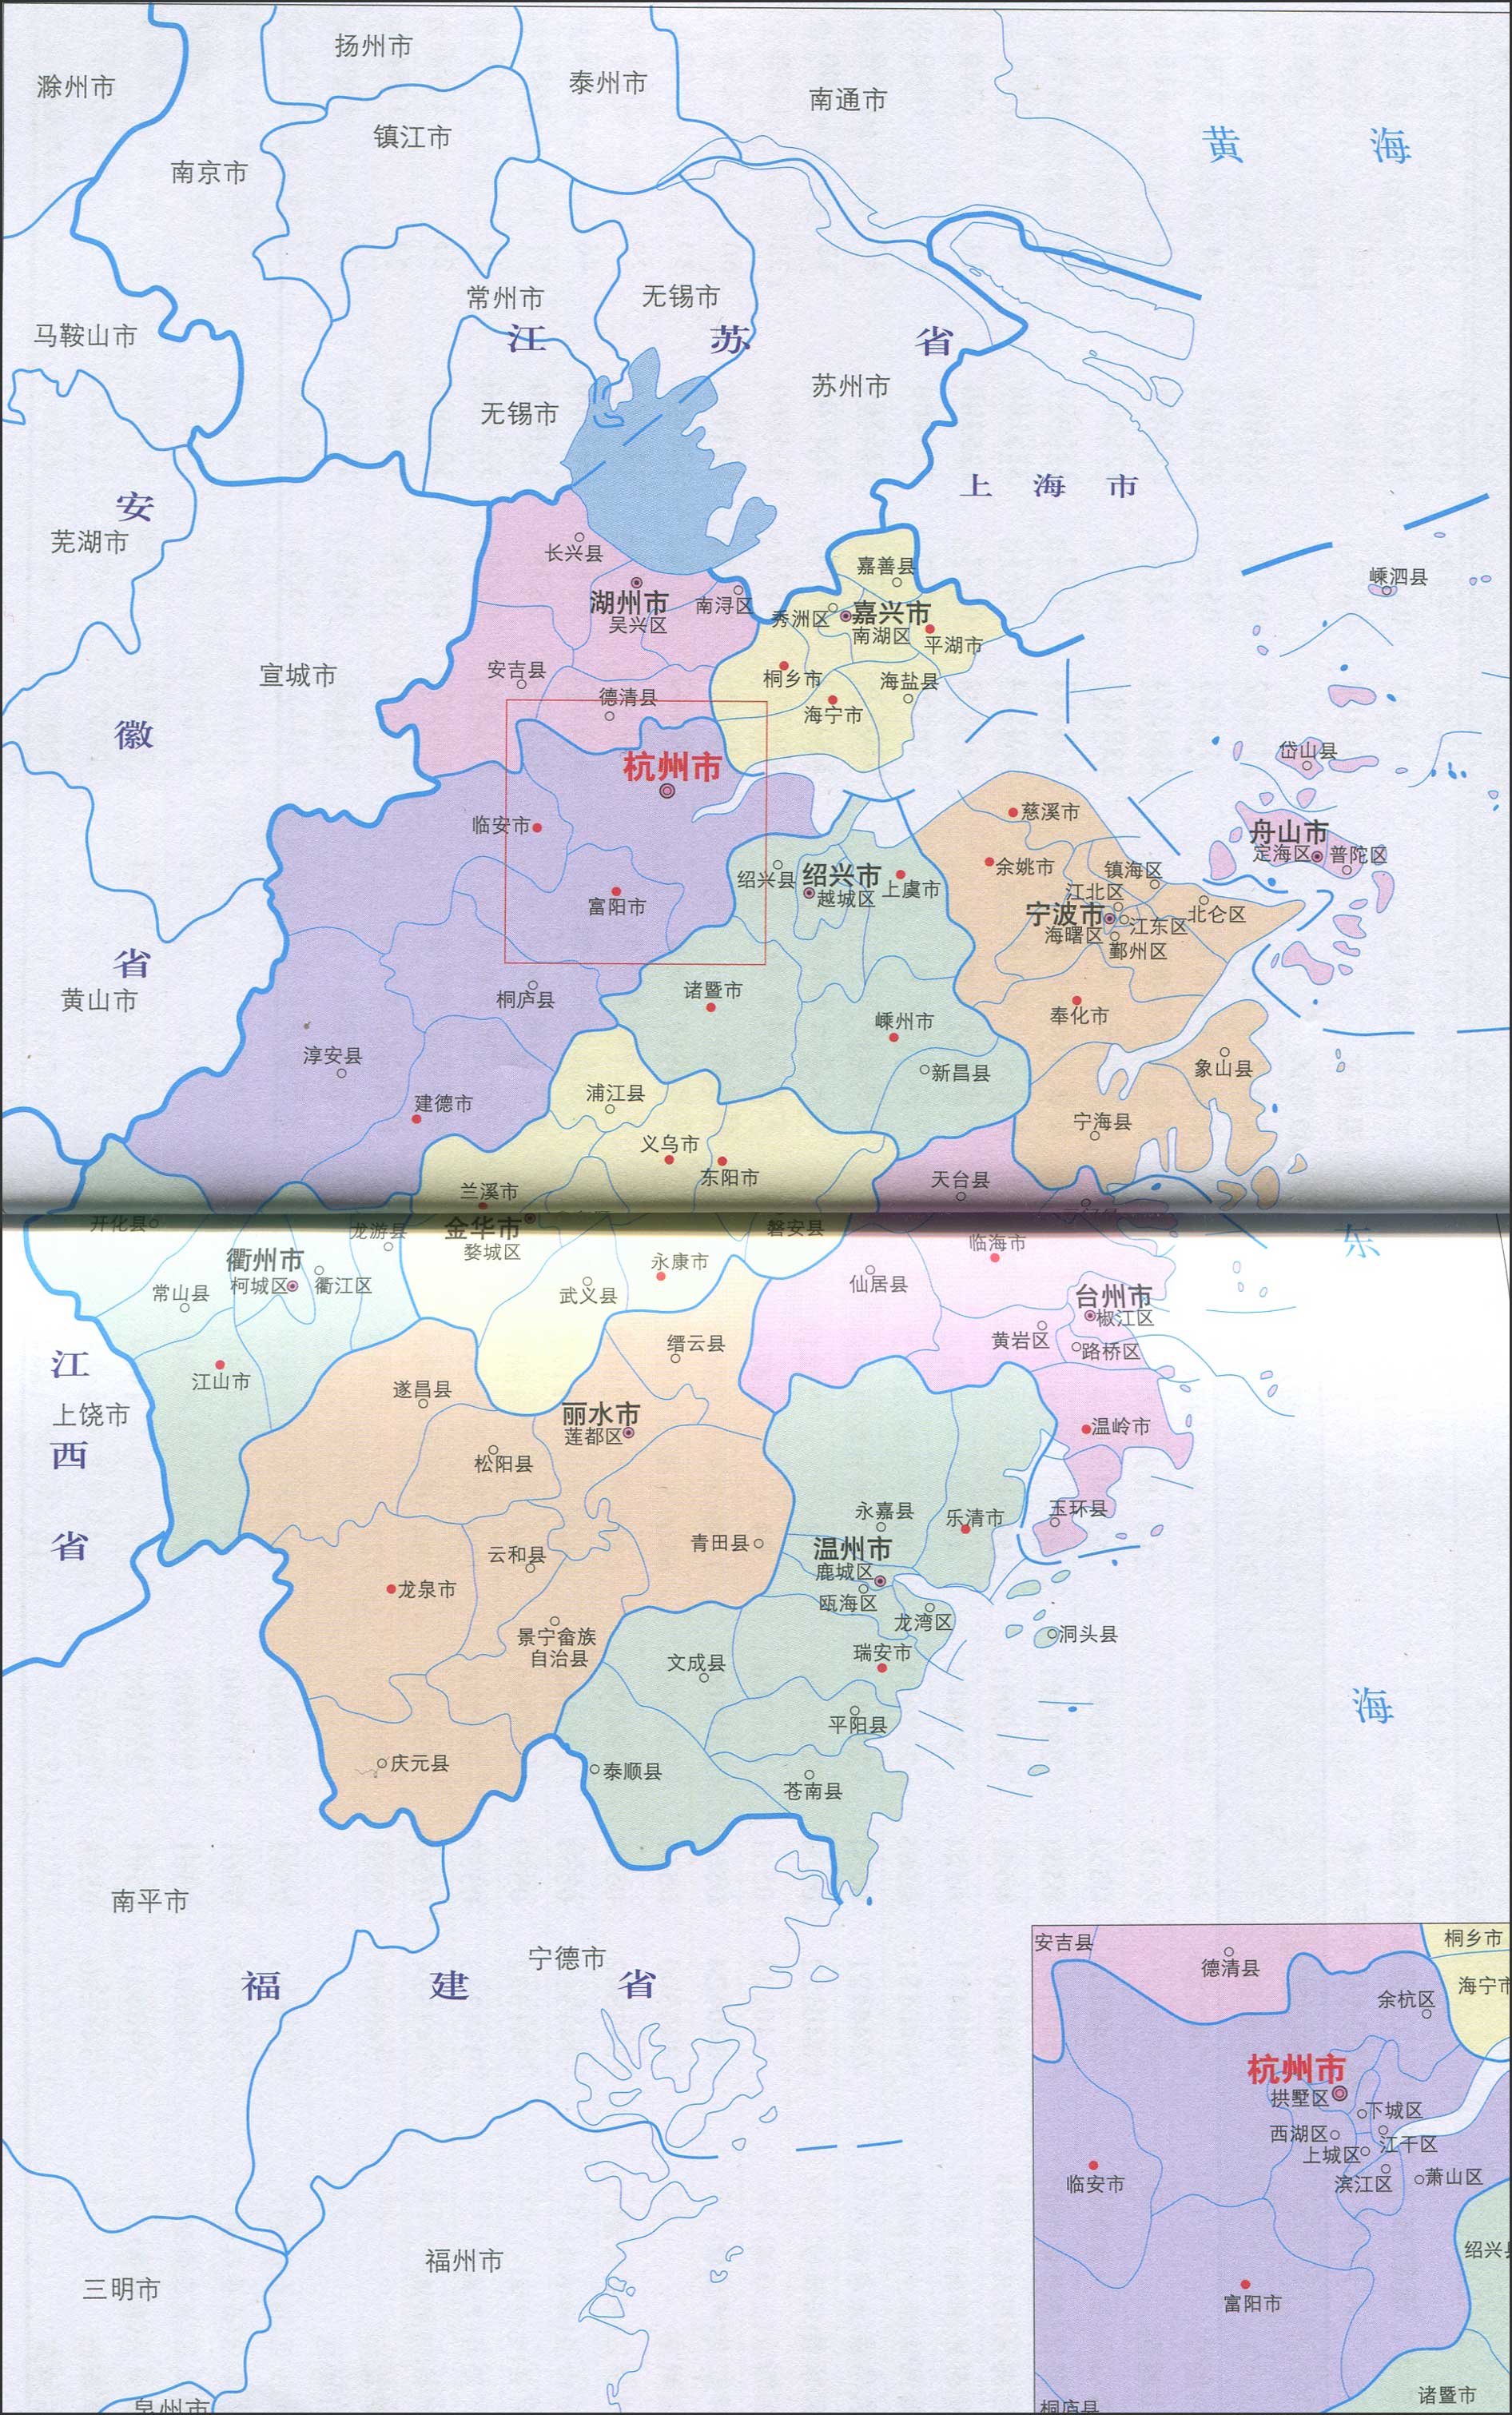 中国地图 浙江 >> 浙江行政区划简图  分类: 浙江 中国行政地图集图片